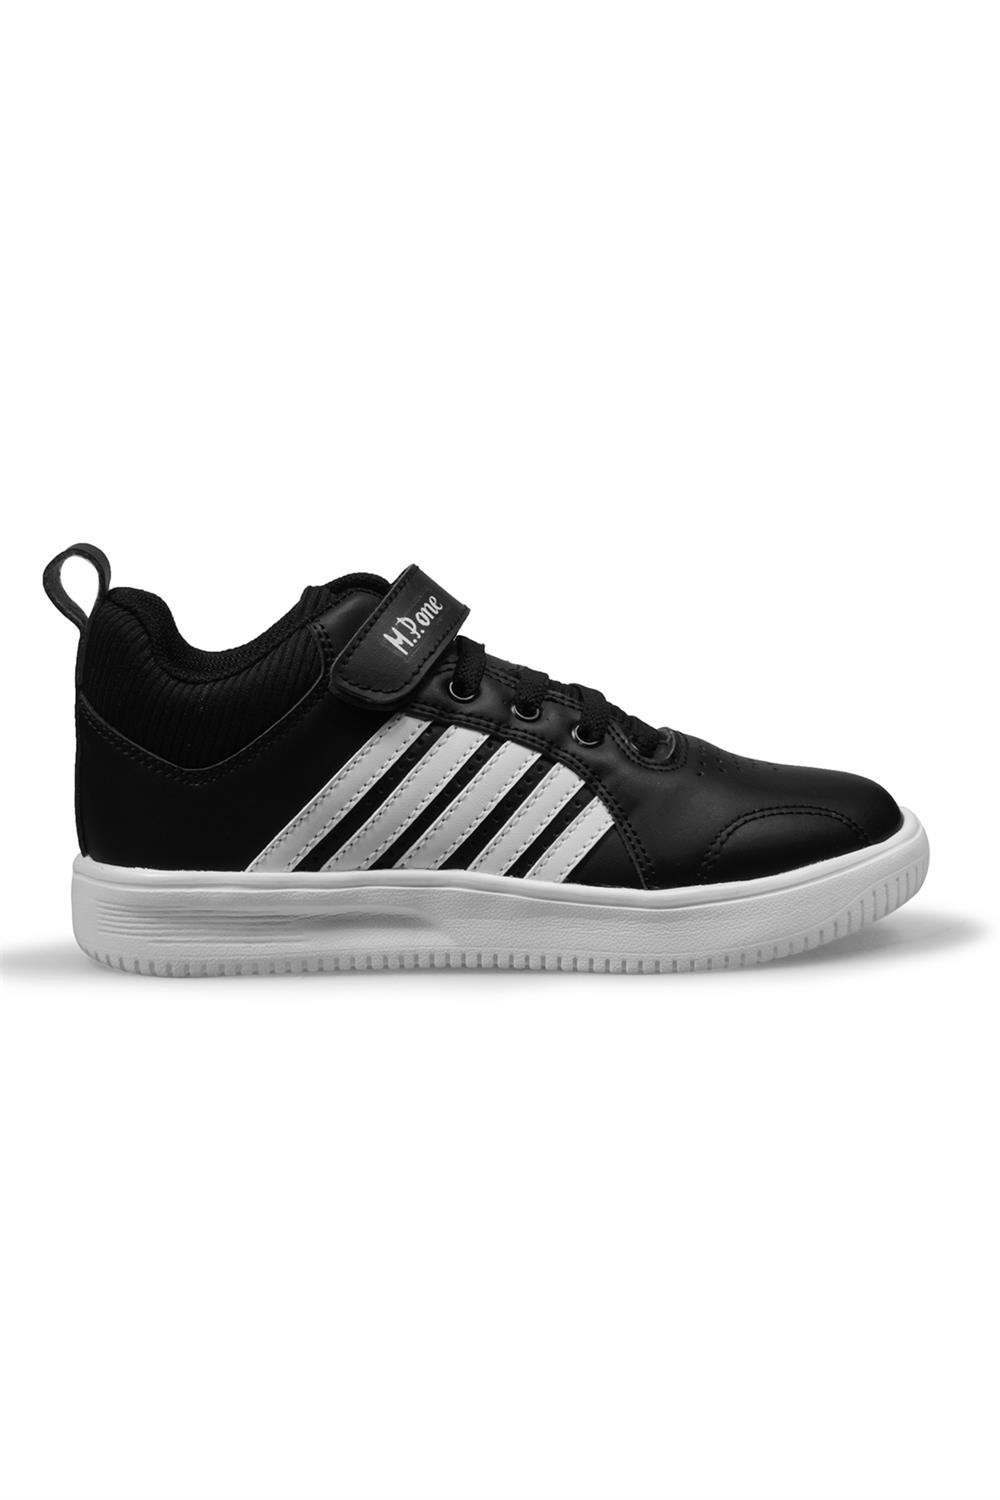 Çocuk Siyah-beyaz Spor Ayakkabı Modelleri ve Fiyatları